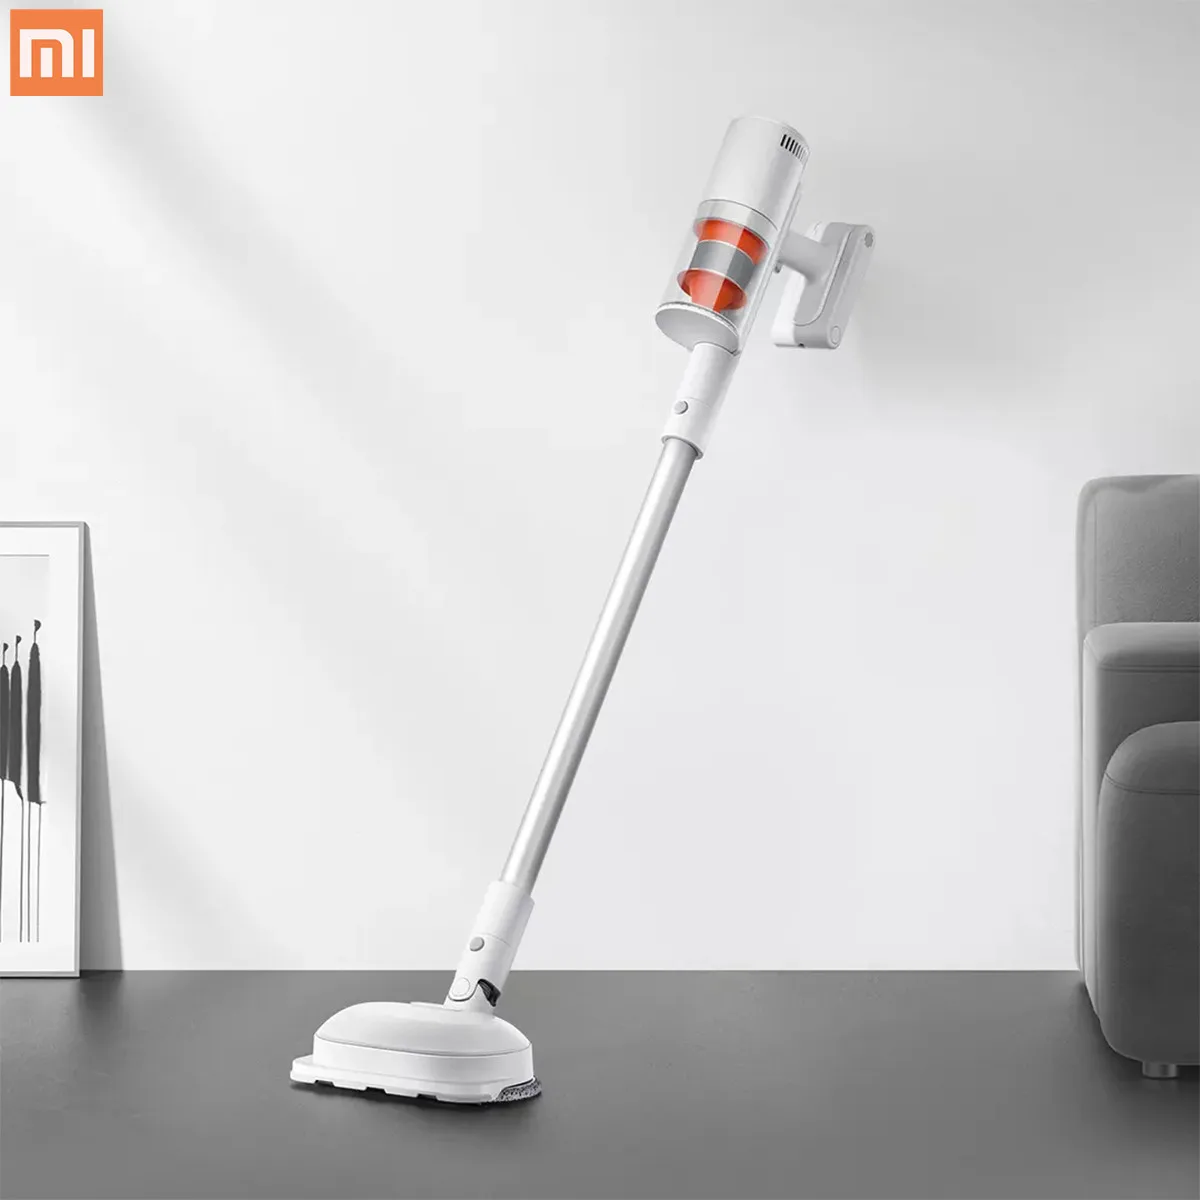 Xiaomi Vacuum Cleaner K10